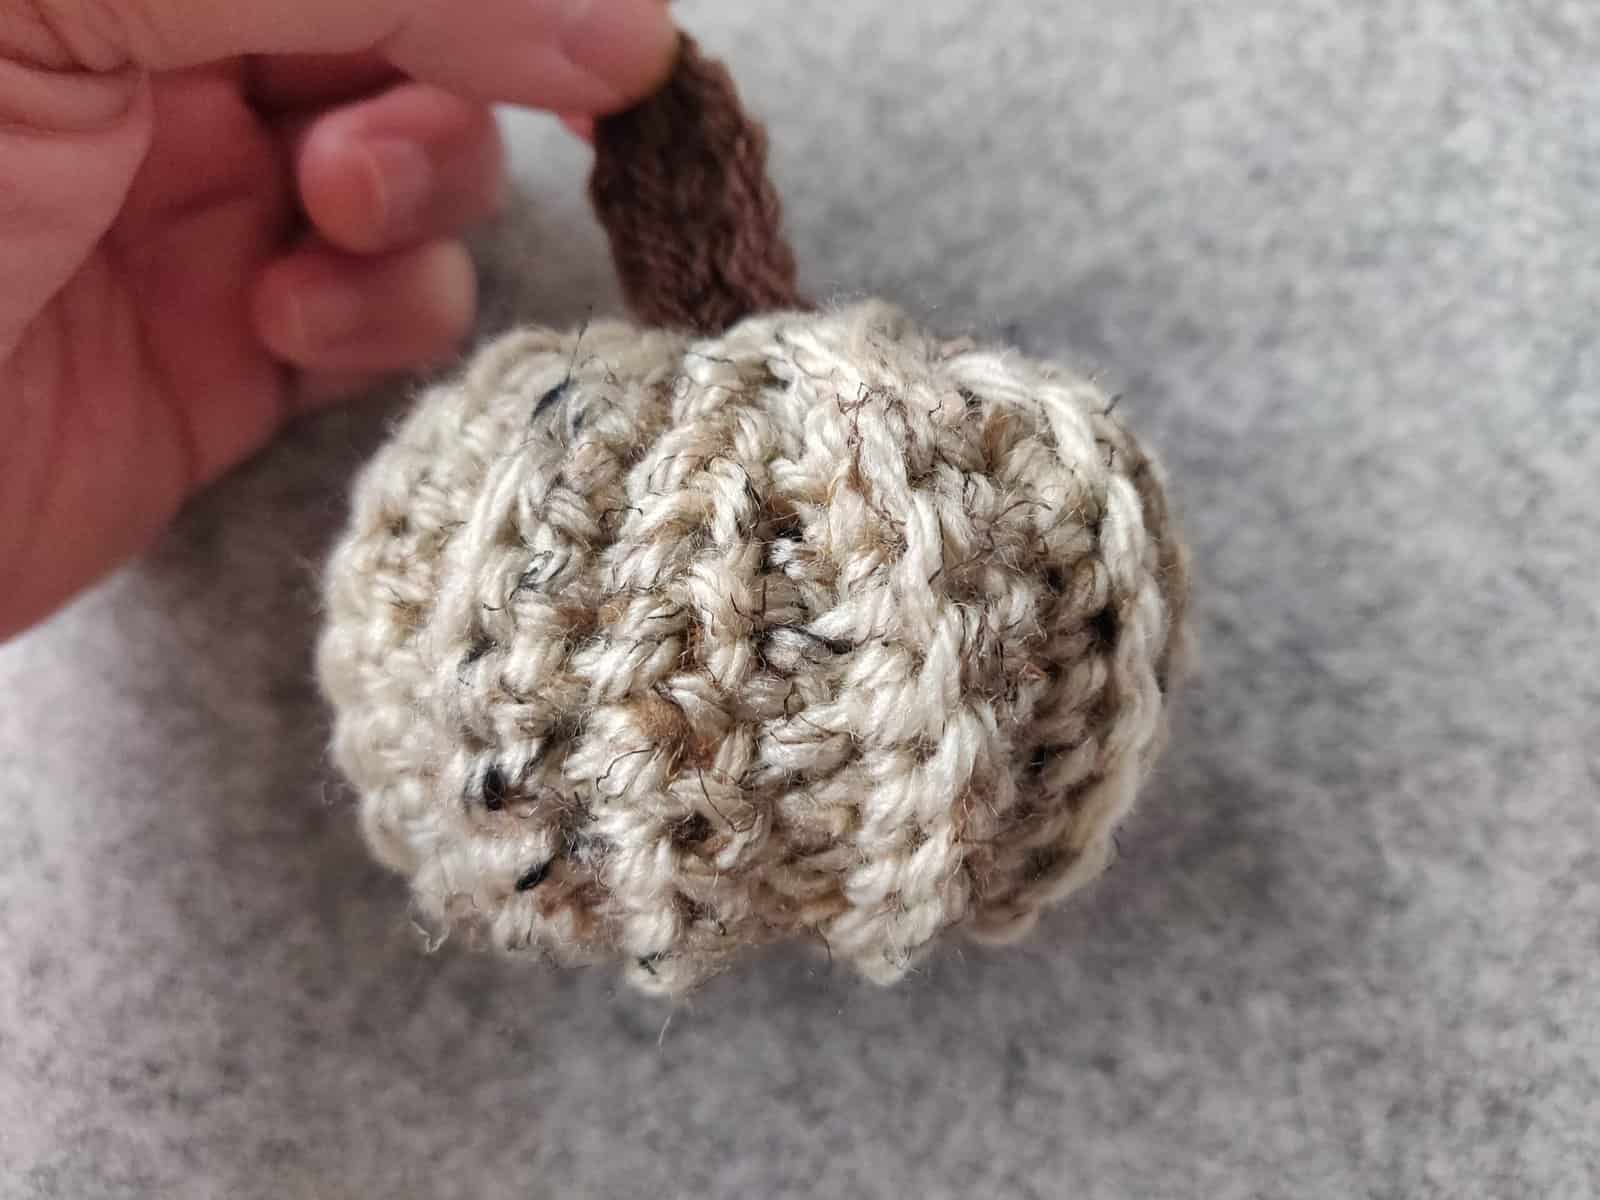 Crochet Pumpkin